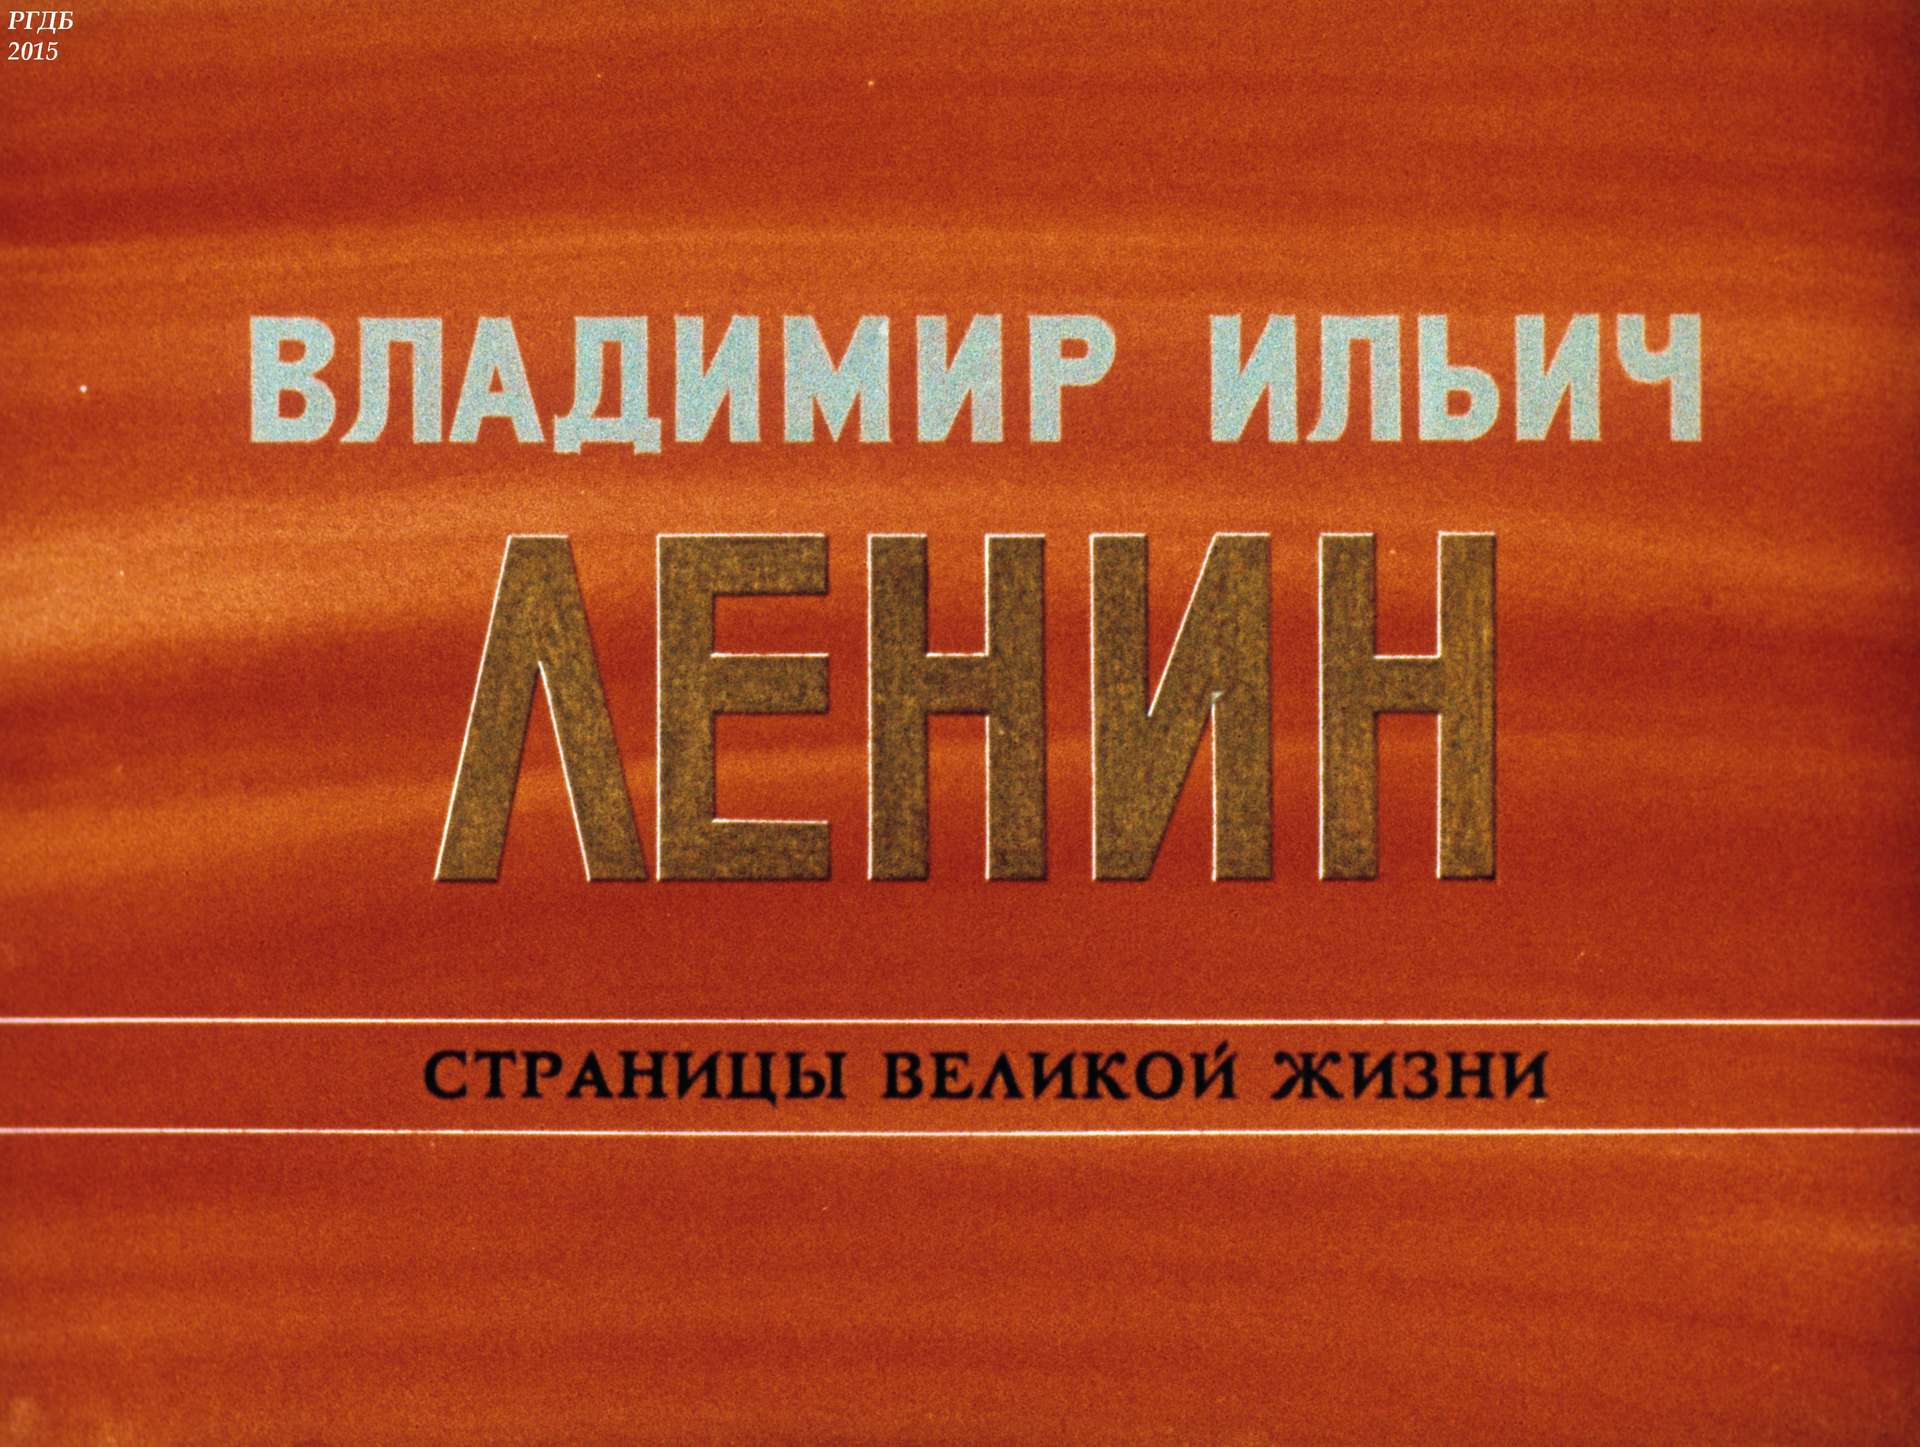 Владимир Ильич Ленин: страницы великой жизни. Ч.4